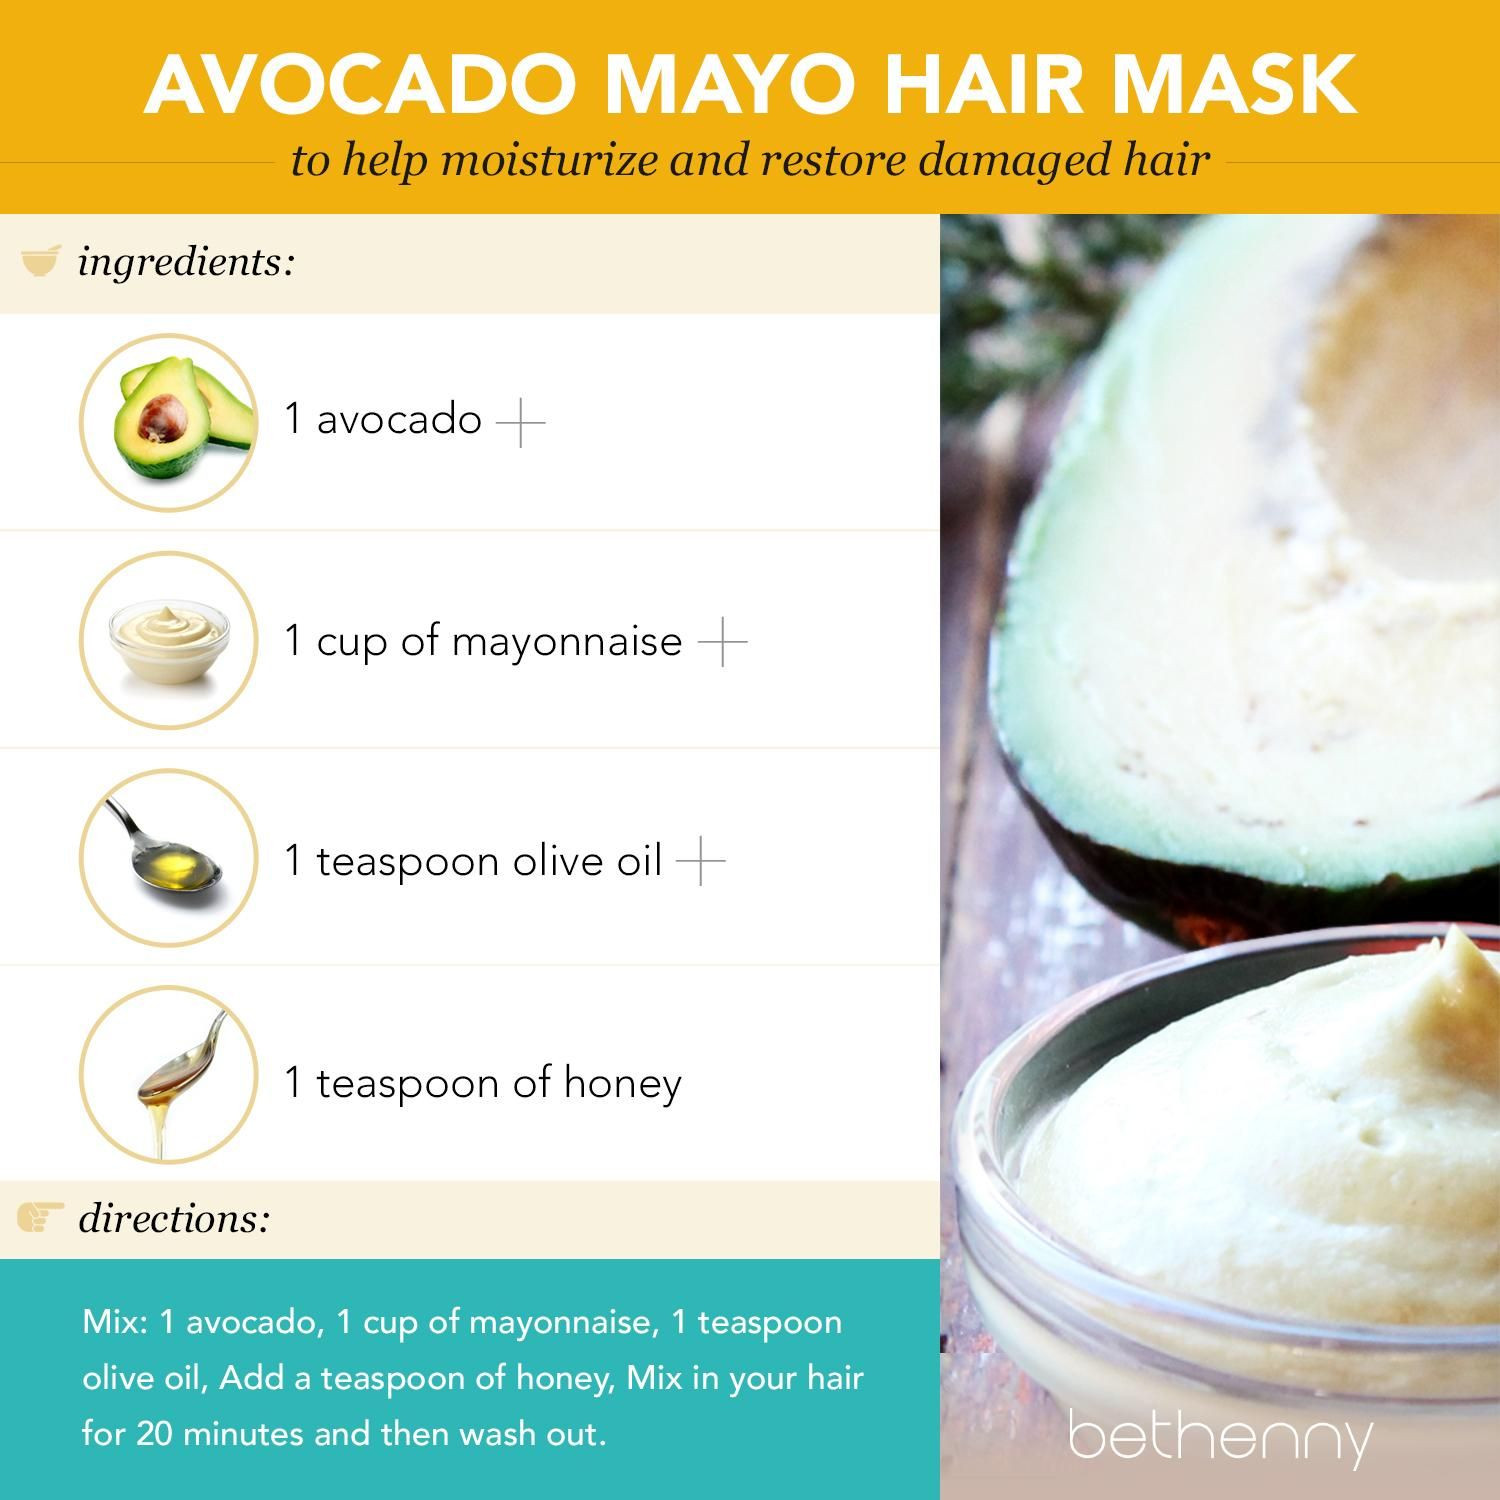 Mayo Hair Mask DIY
 At home avocado mayo hair mask diy beauty